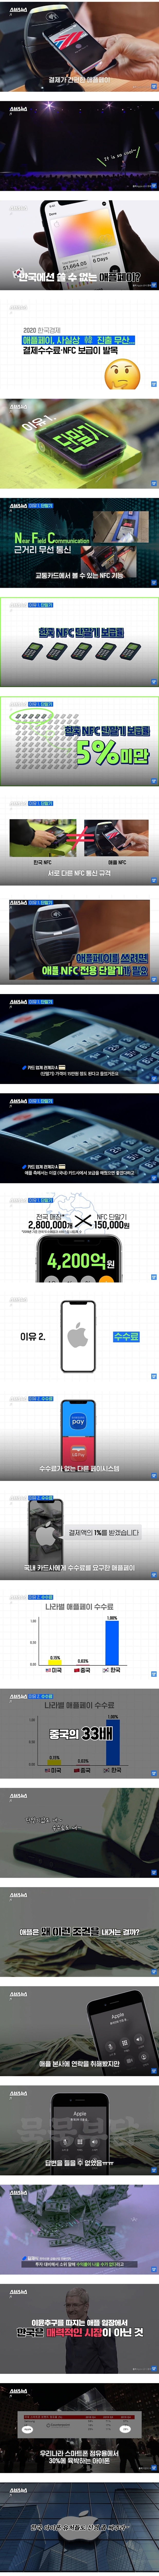 애플페이를 한국에 출시하지 않는 이유